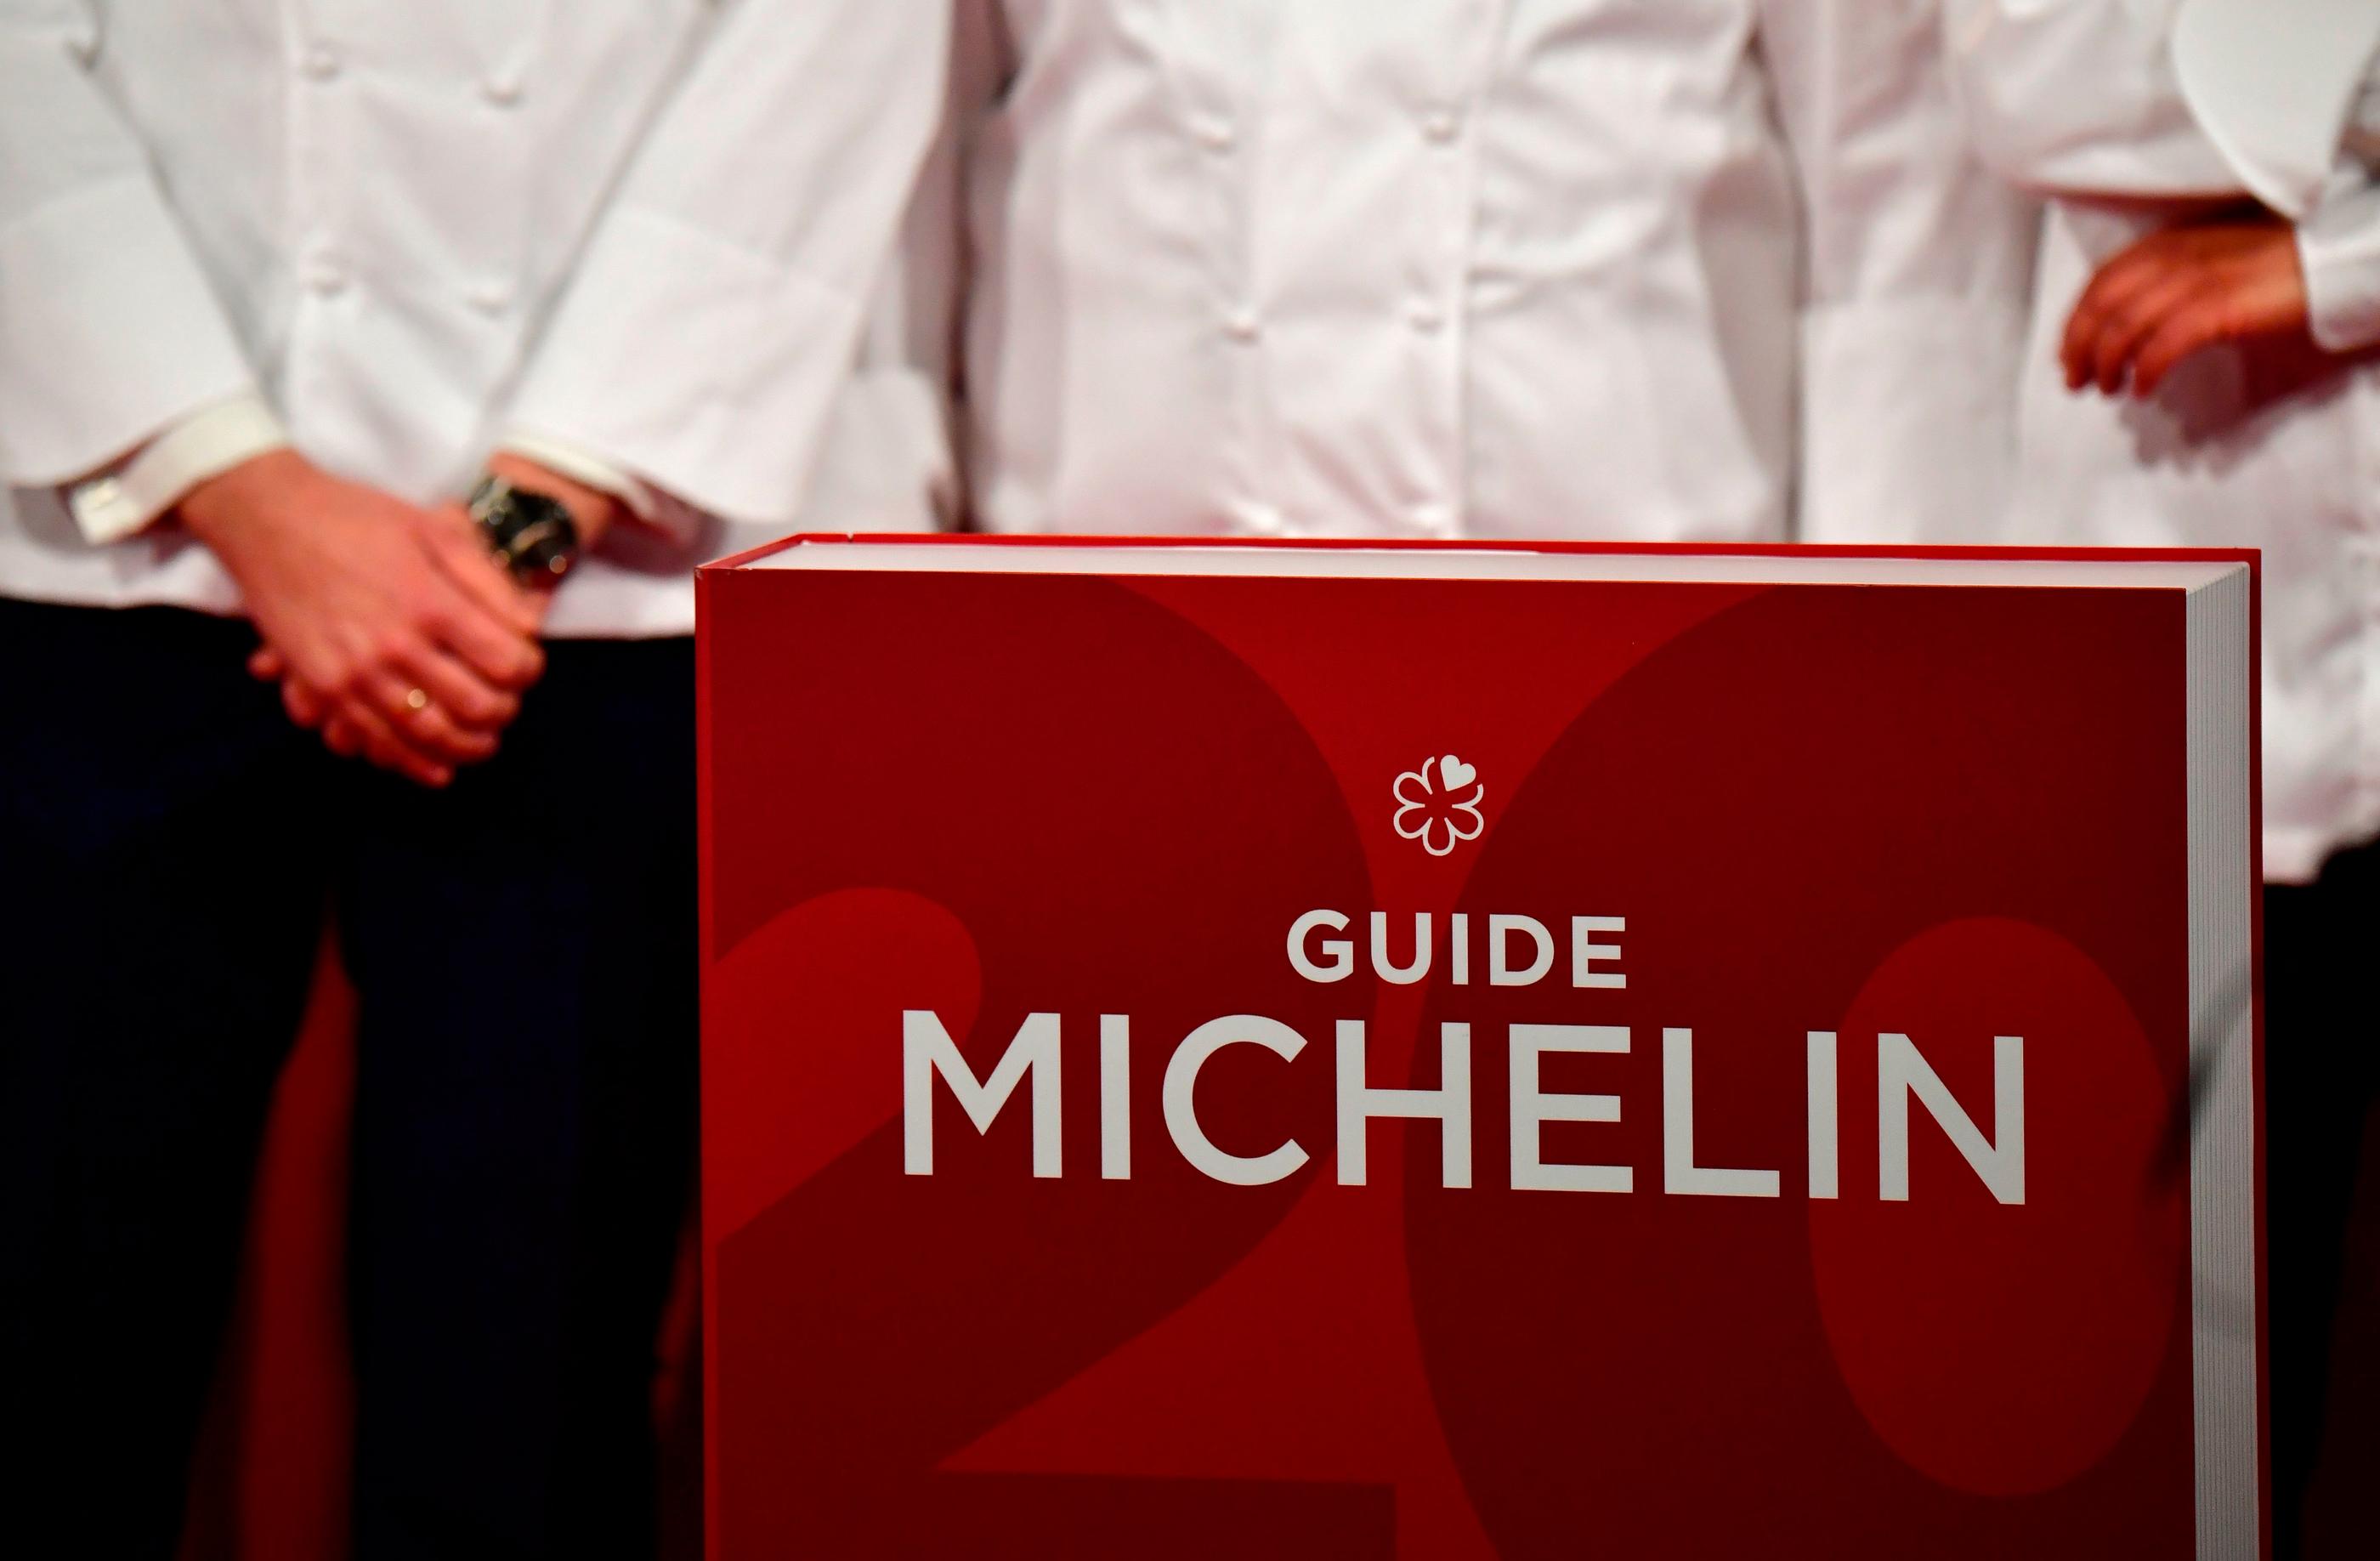 Depuis 1900, le célèbre guide rouge s'est imposé comme une référence gastronomique et hôtelière. AFP/Tobias Schwarz